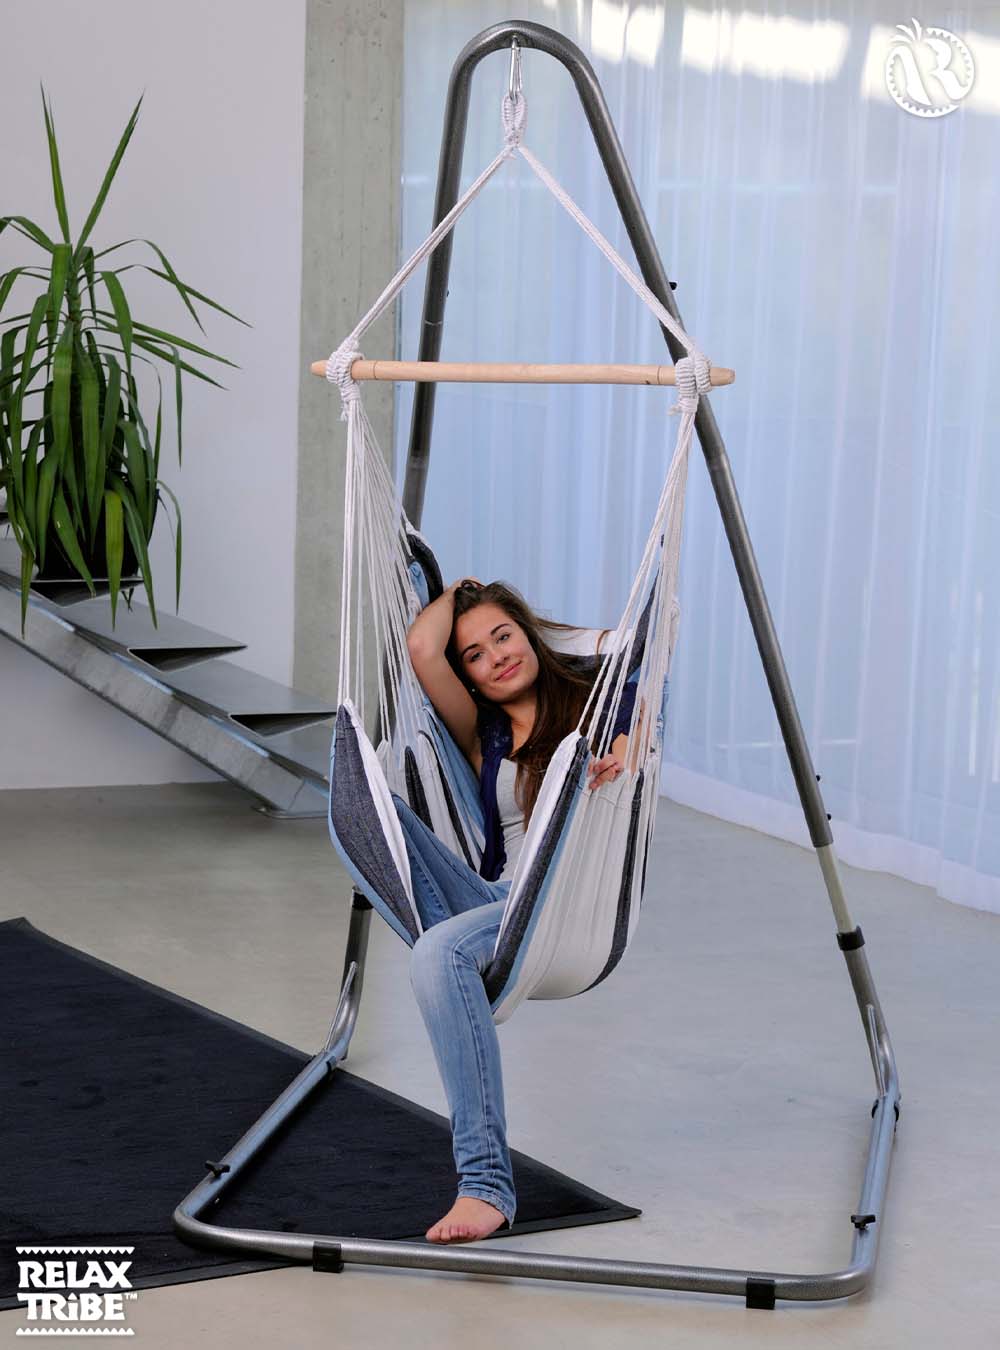 havanna-marine-double-xl-weatherproof-hammock-chair-home-garden-blue-tones-indoor-metal-stand-luna